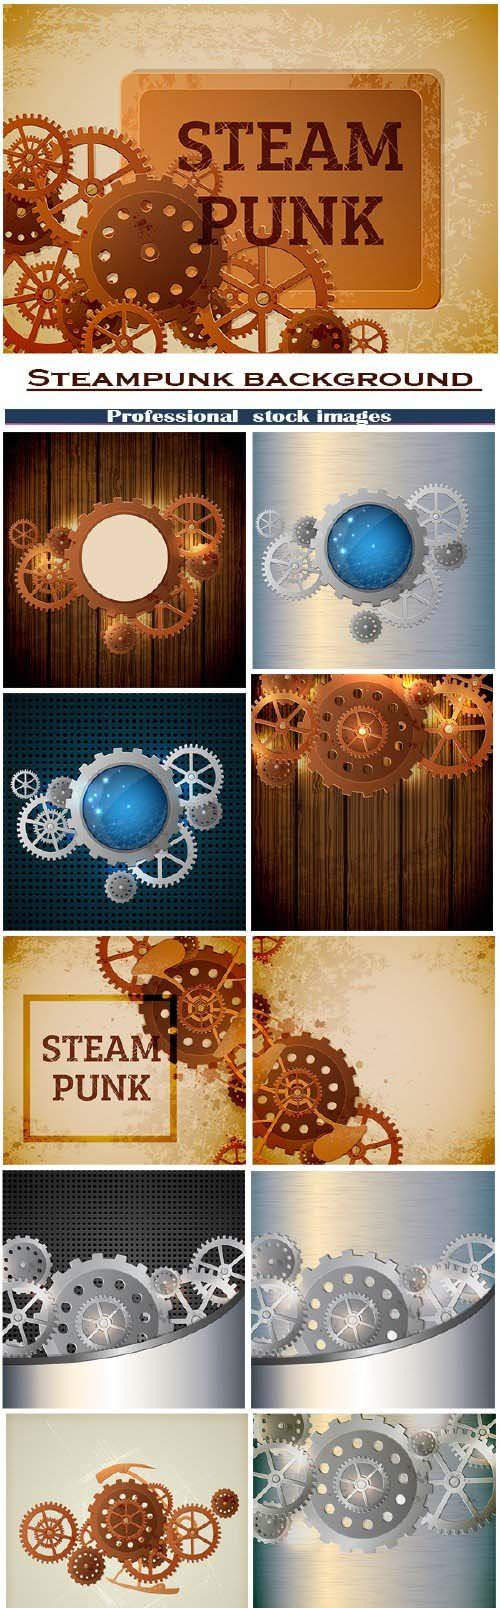 Steampunk background 